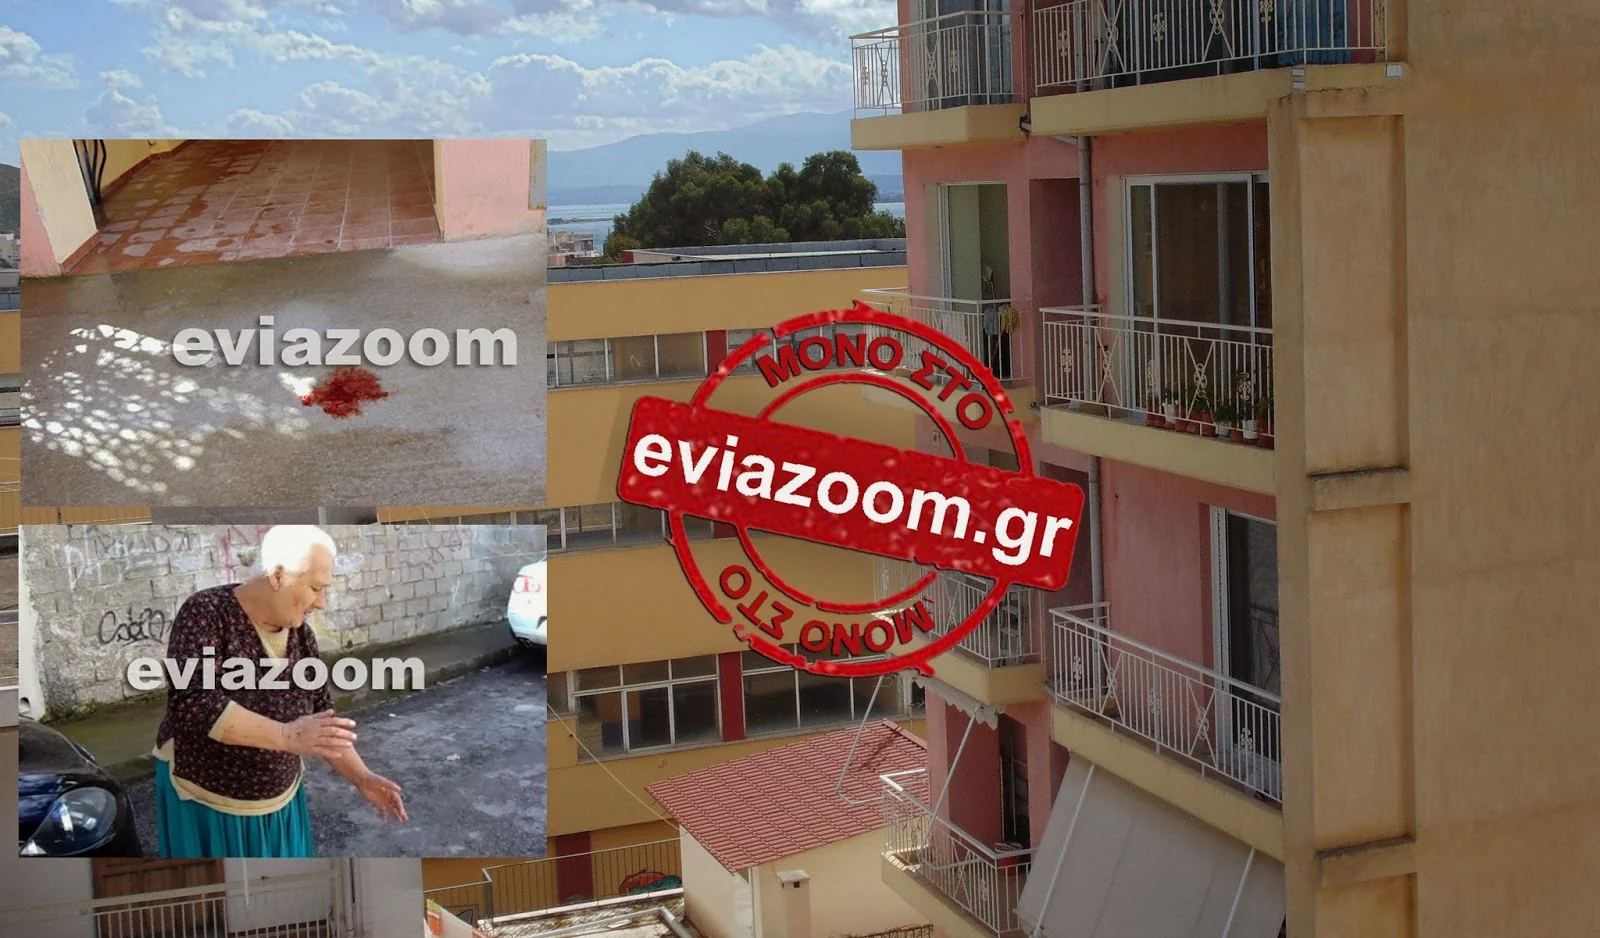 Ανείπωτη Τραγωδία στην Χαλκίδα: Μάνα και γιος βούτηξαν στο κενό από τον 5ο όροφο της πολυκατοικίας - Αυτόπτης μάρτυρας μιλάει στο eviazoom.gr! (ΦΩΤΟ & ΒΙΝΤΕΟ)